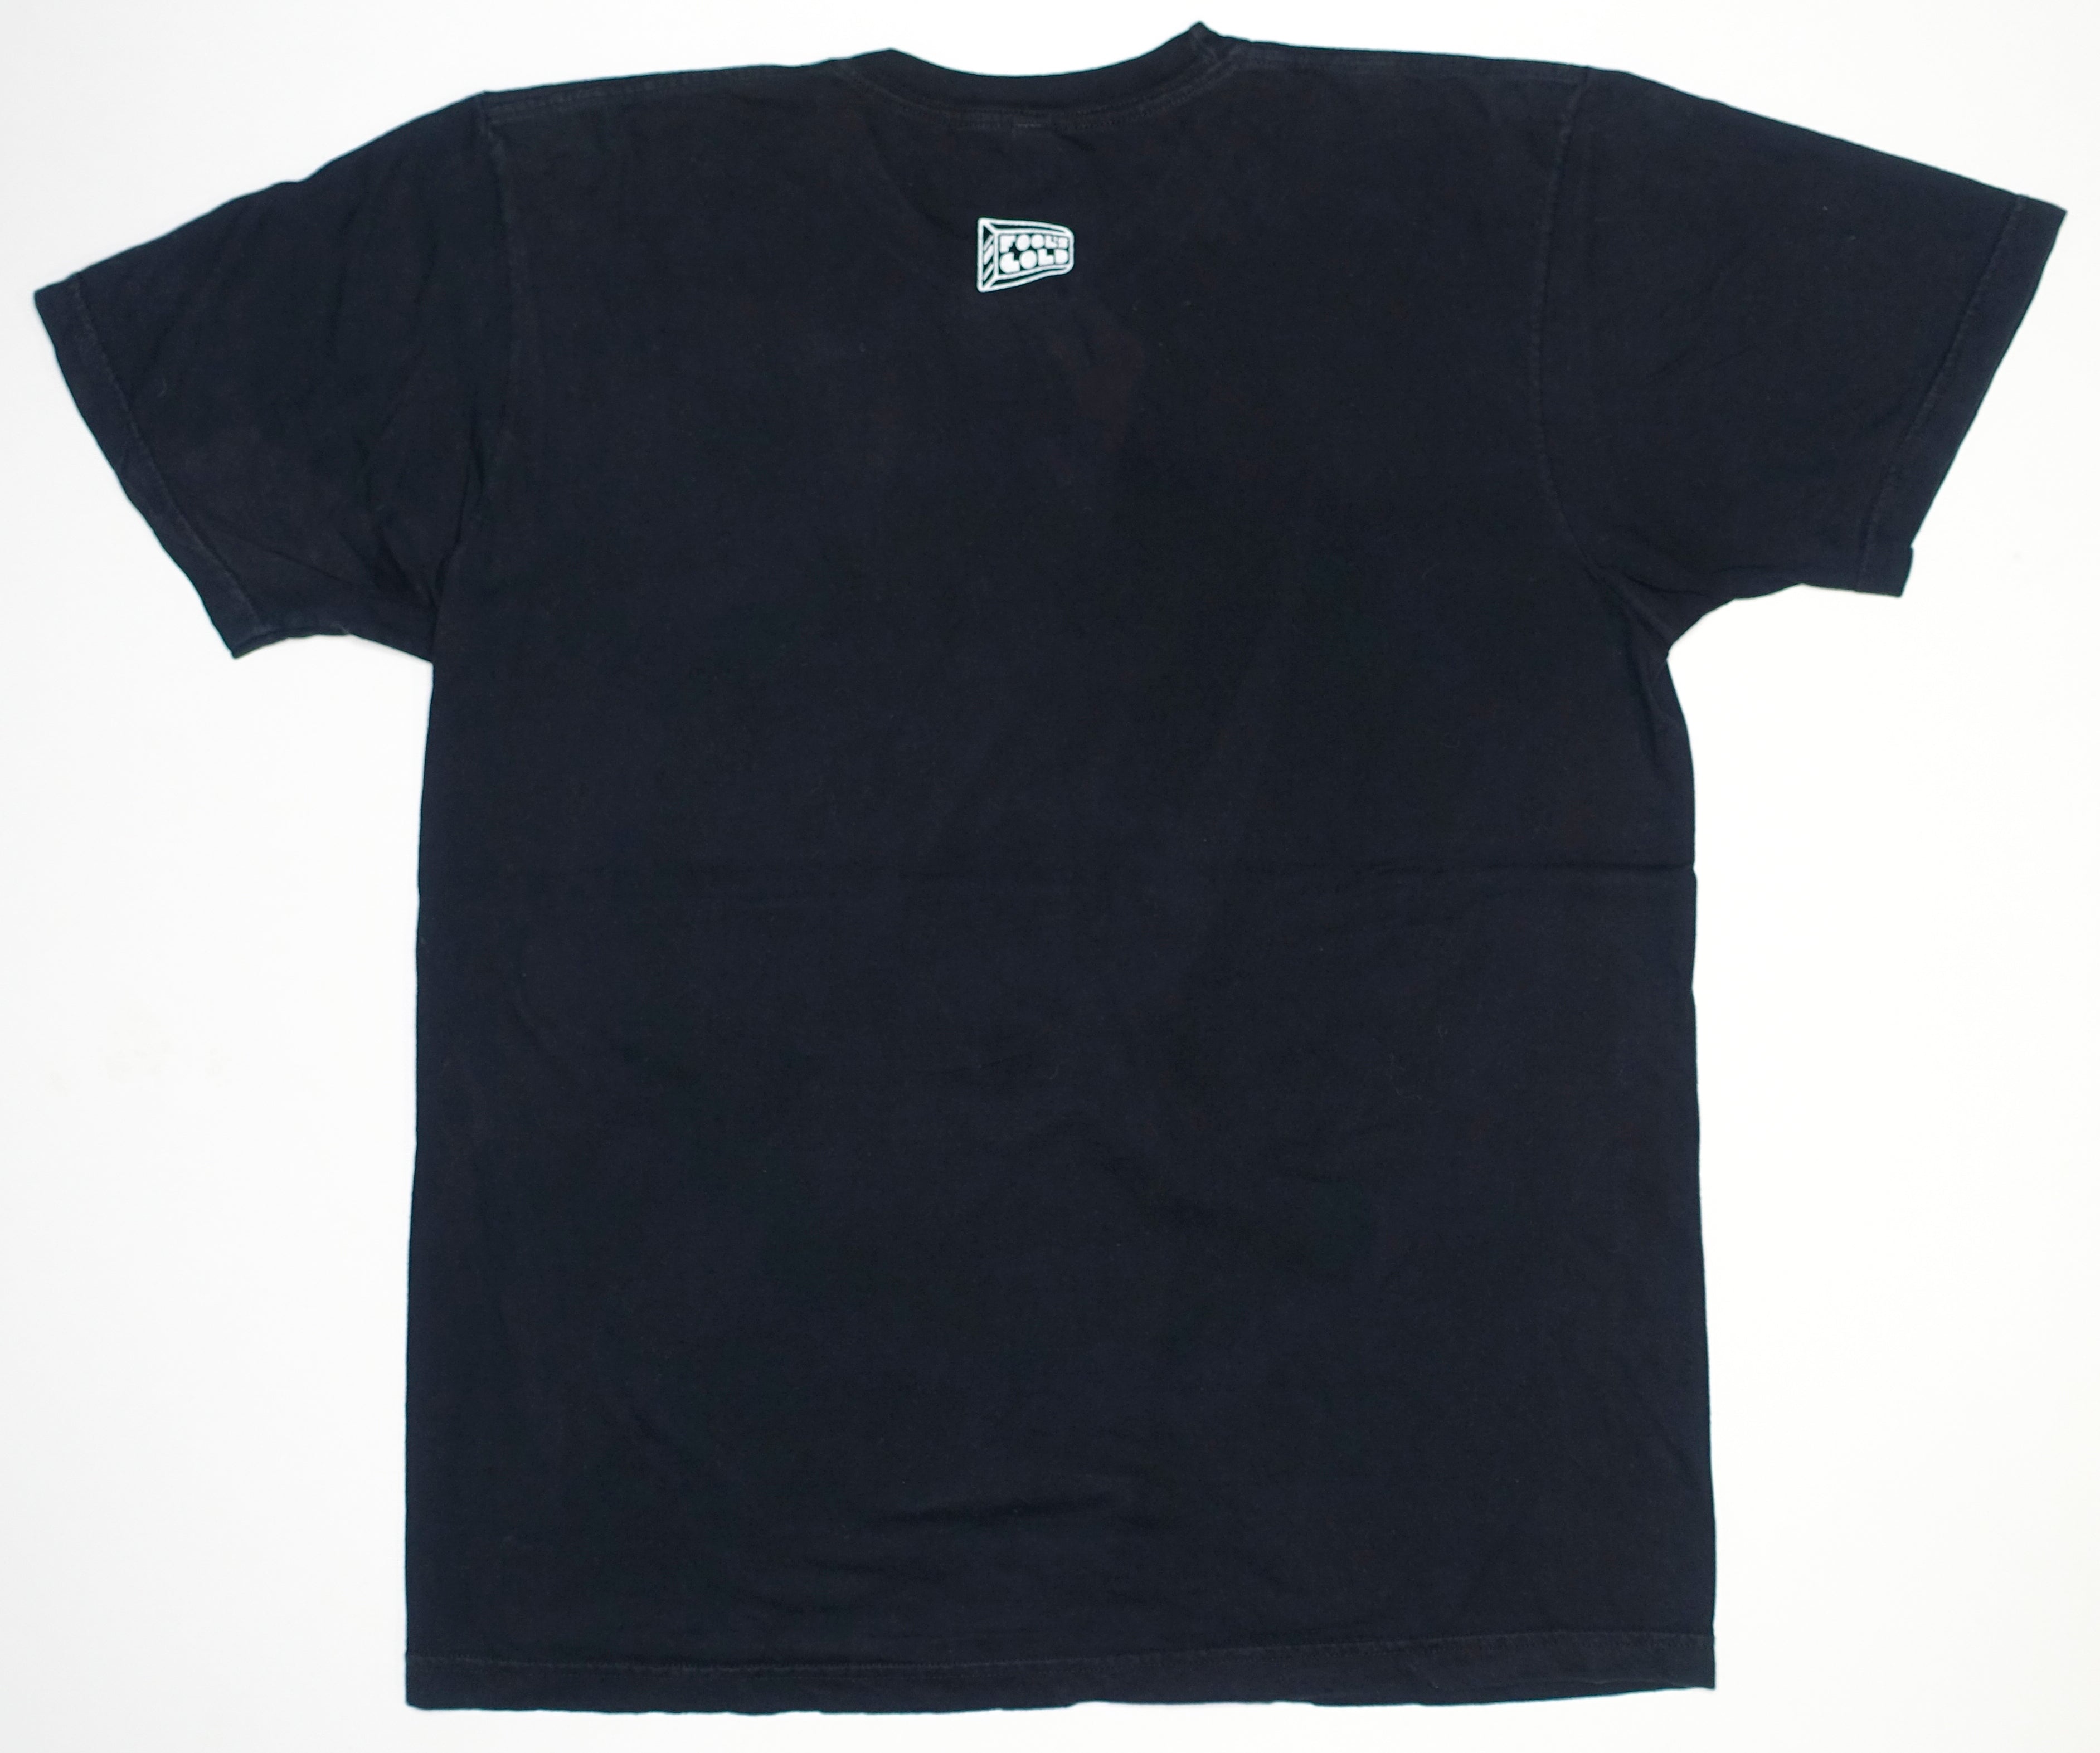 Danny Brown - XXX 2011 Tour Shirt Size XL